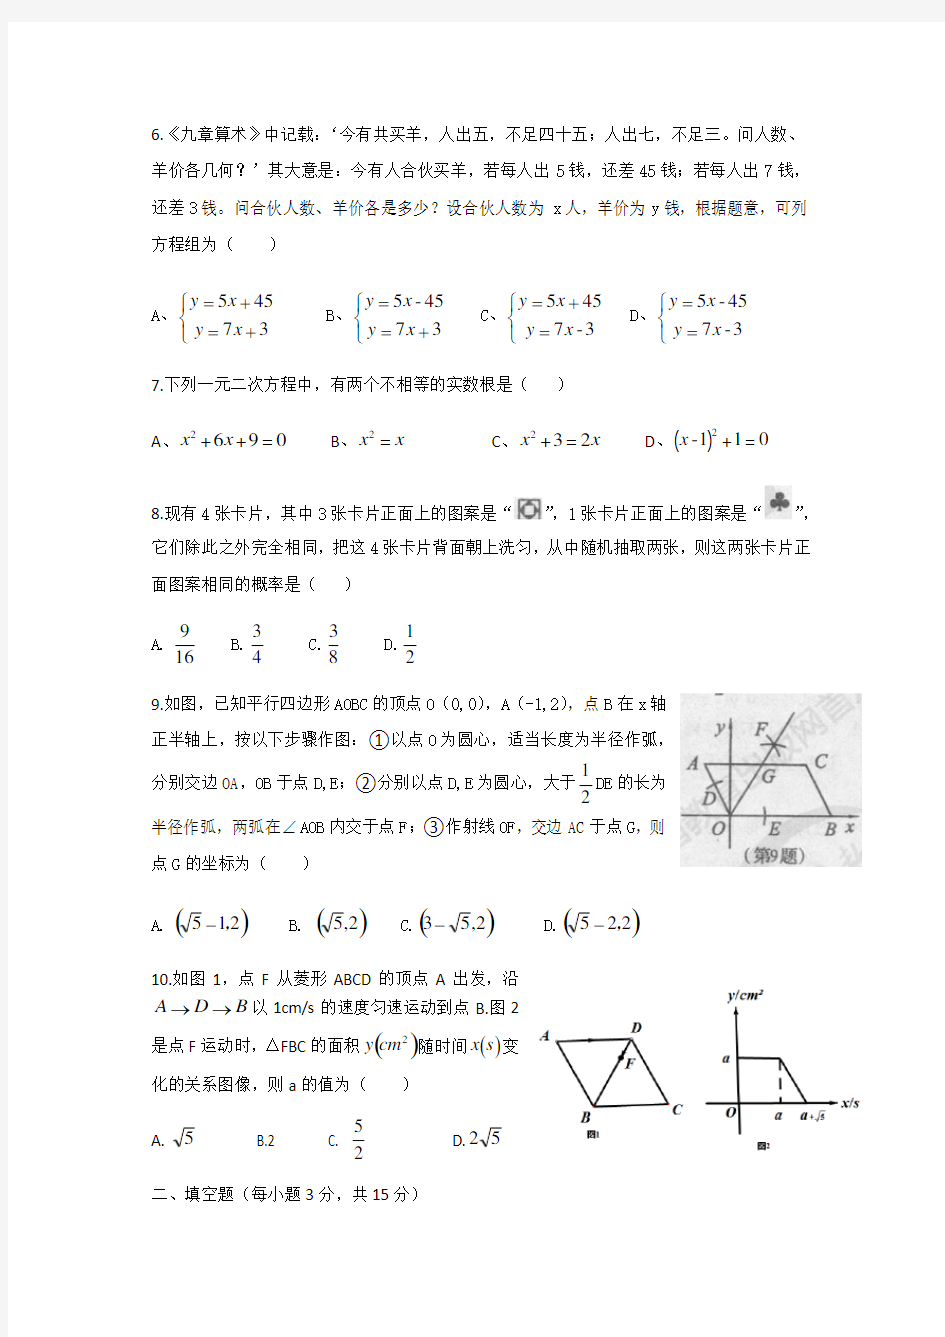 2018年河南省普通高中招生考试数学试卷及答案